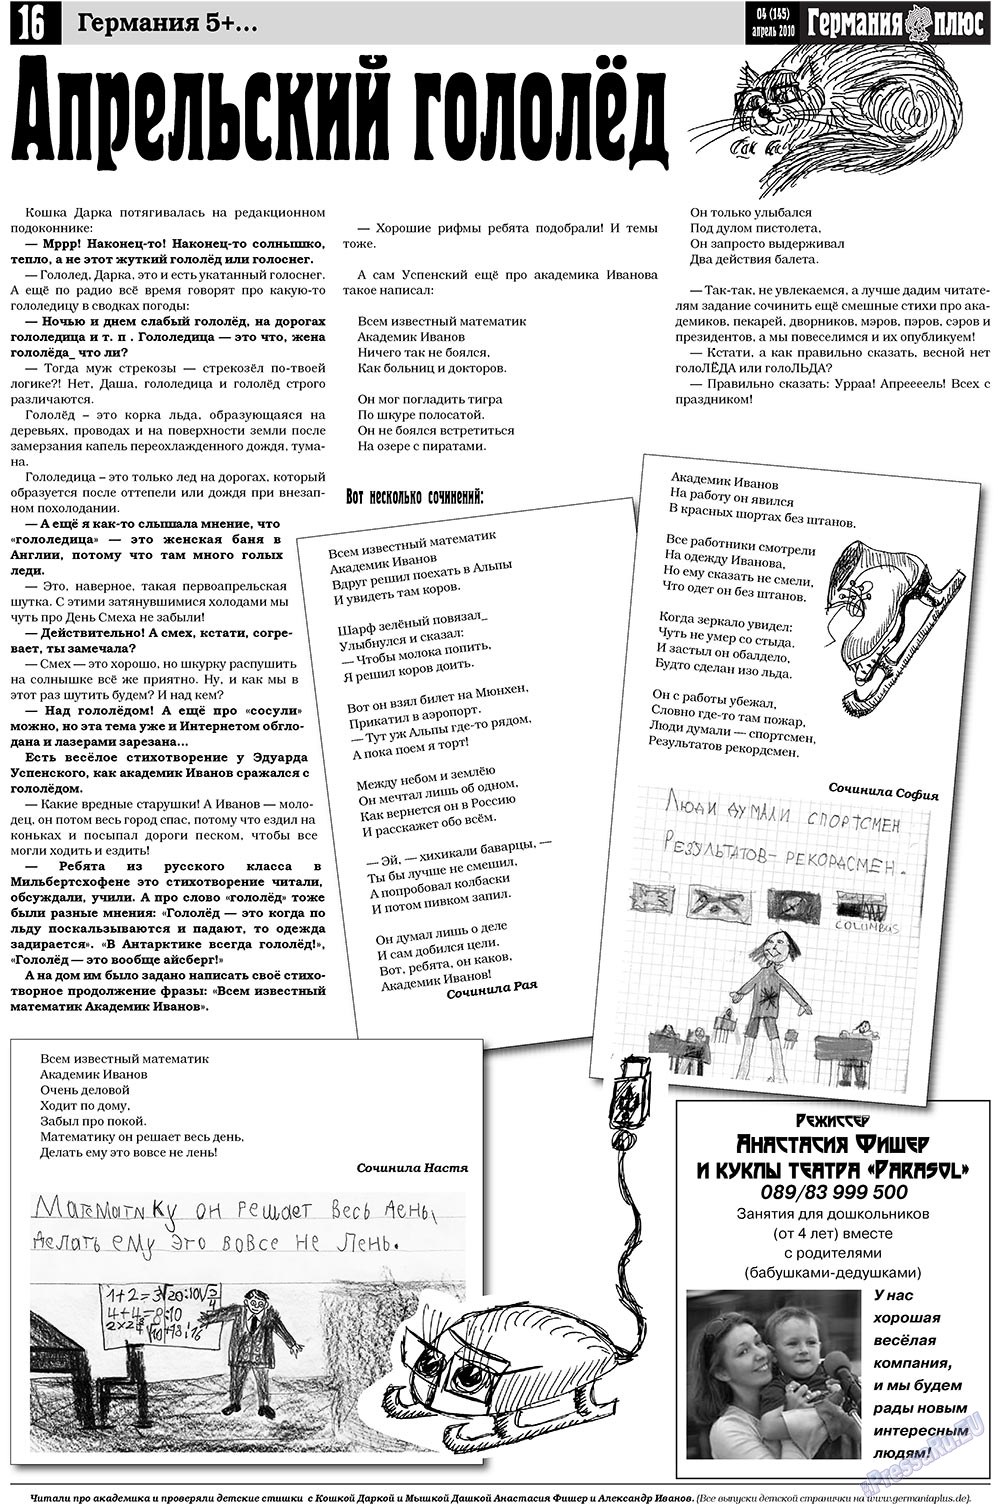 Германия плюс, газета. 2010 №4 стр.16